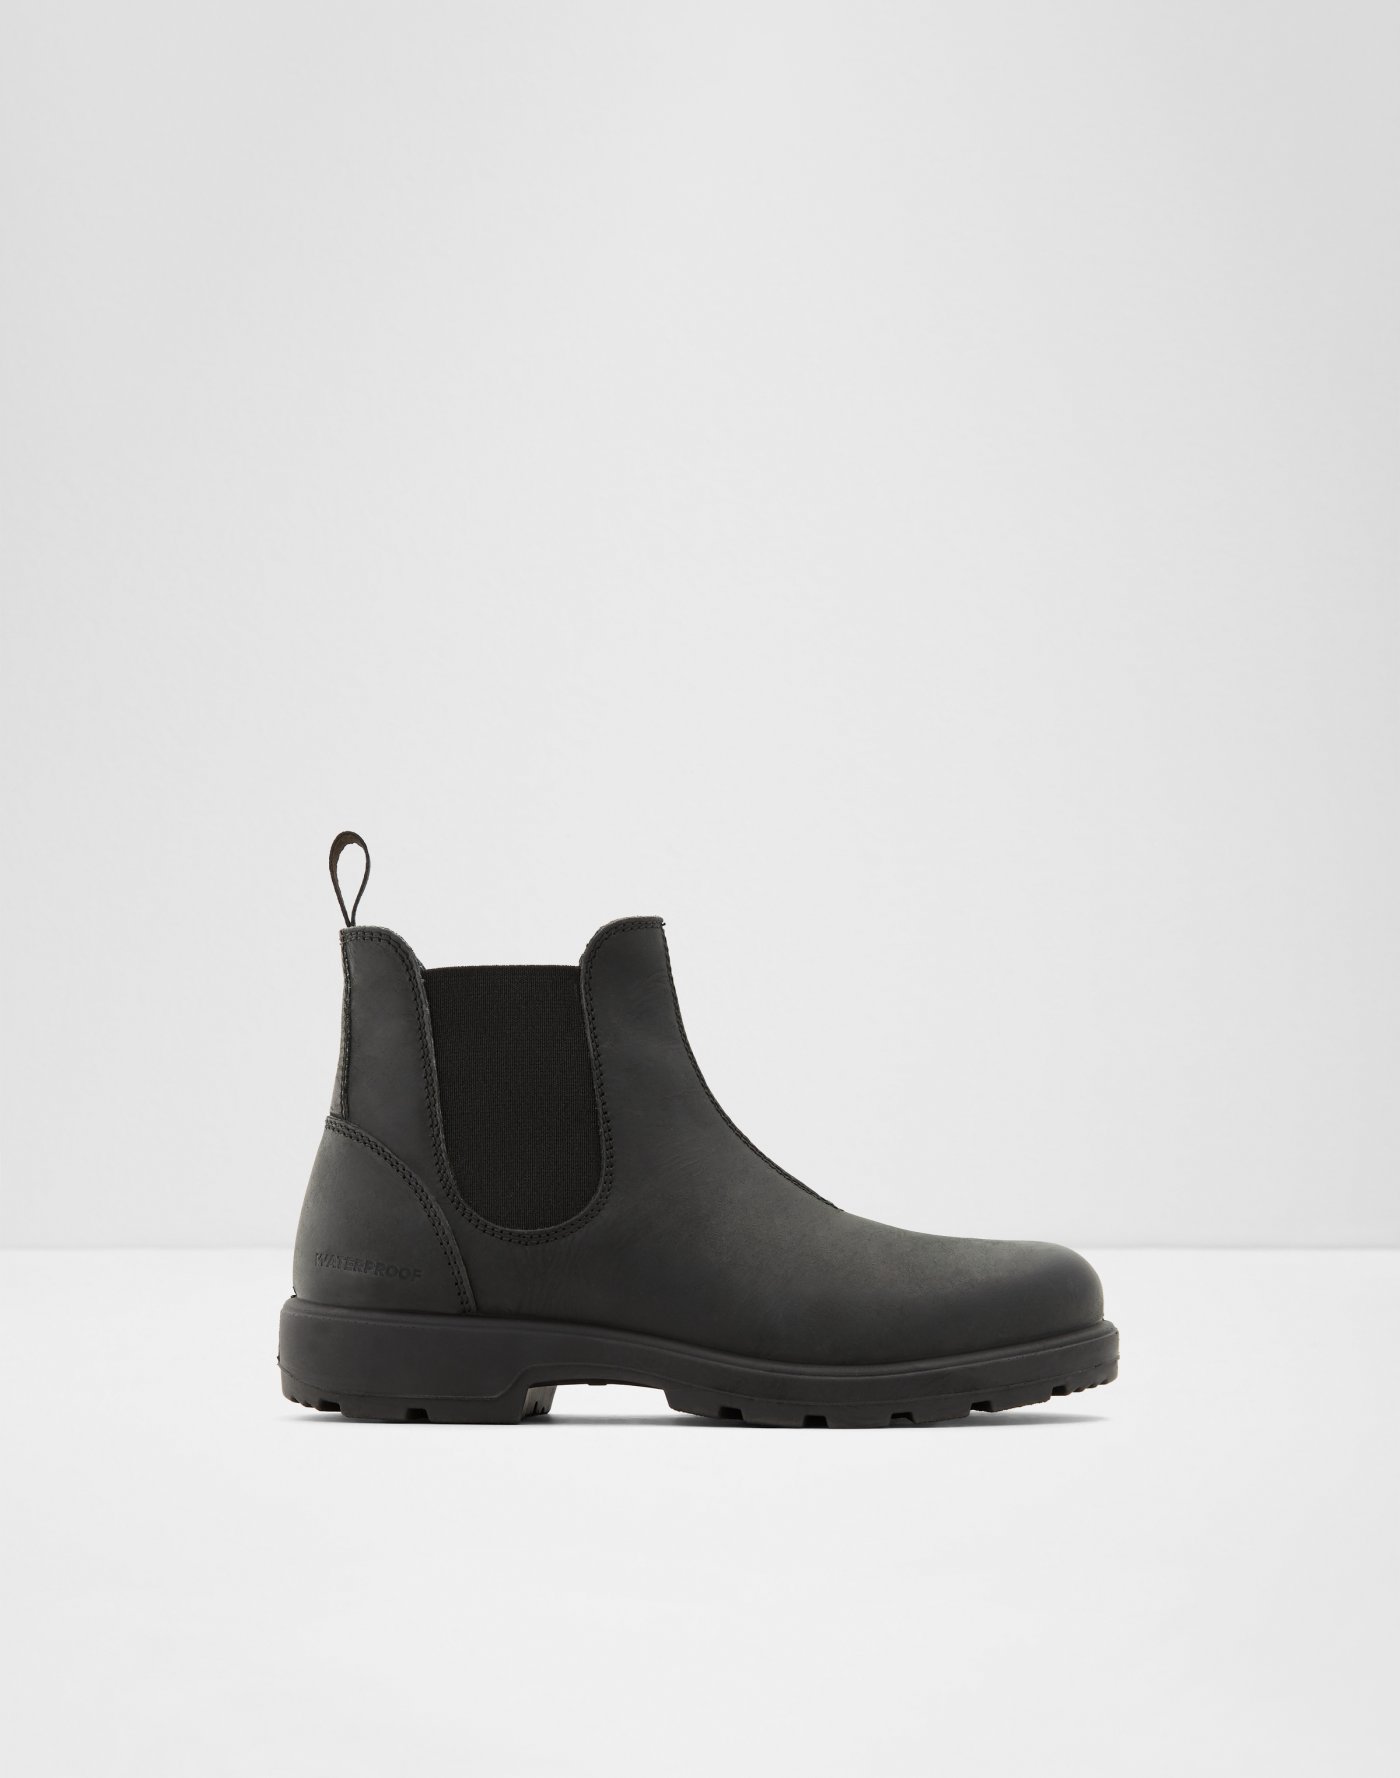 waterproof black dress boots